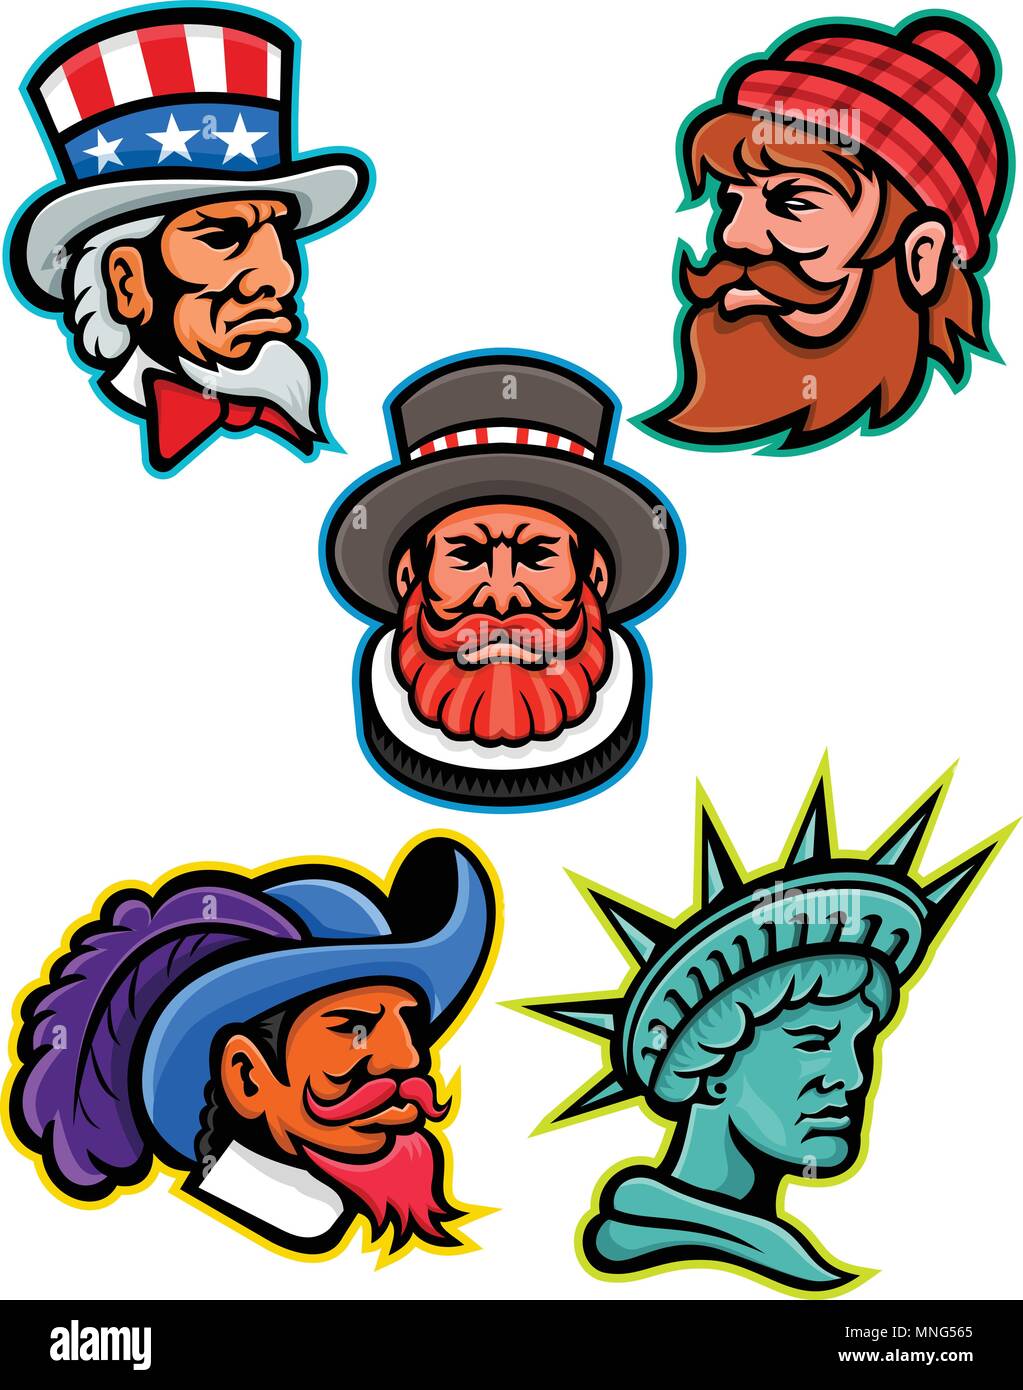 L'icône illustration mascotte ensemble de chefs de mascottes américaines et britanniques tels que l'Oncle Sam, Paul Bunyan lumberjack, Beefeater ou Yeoman, Cavalier ou Musc Illustration de Vecteur